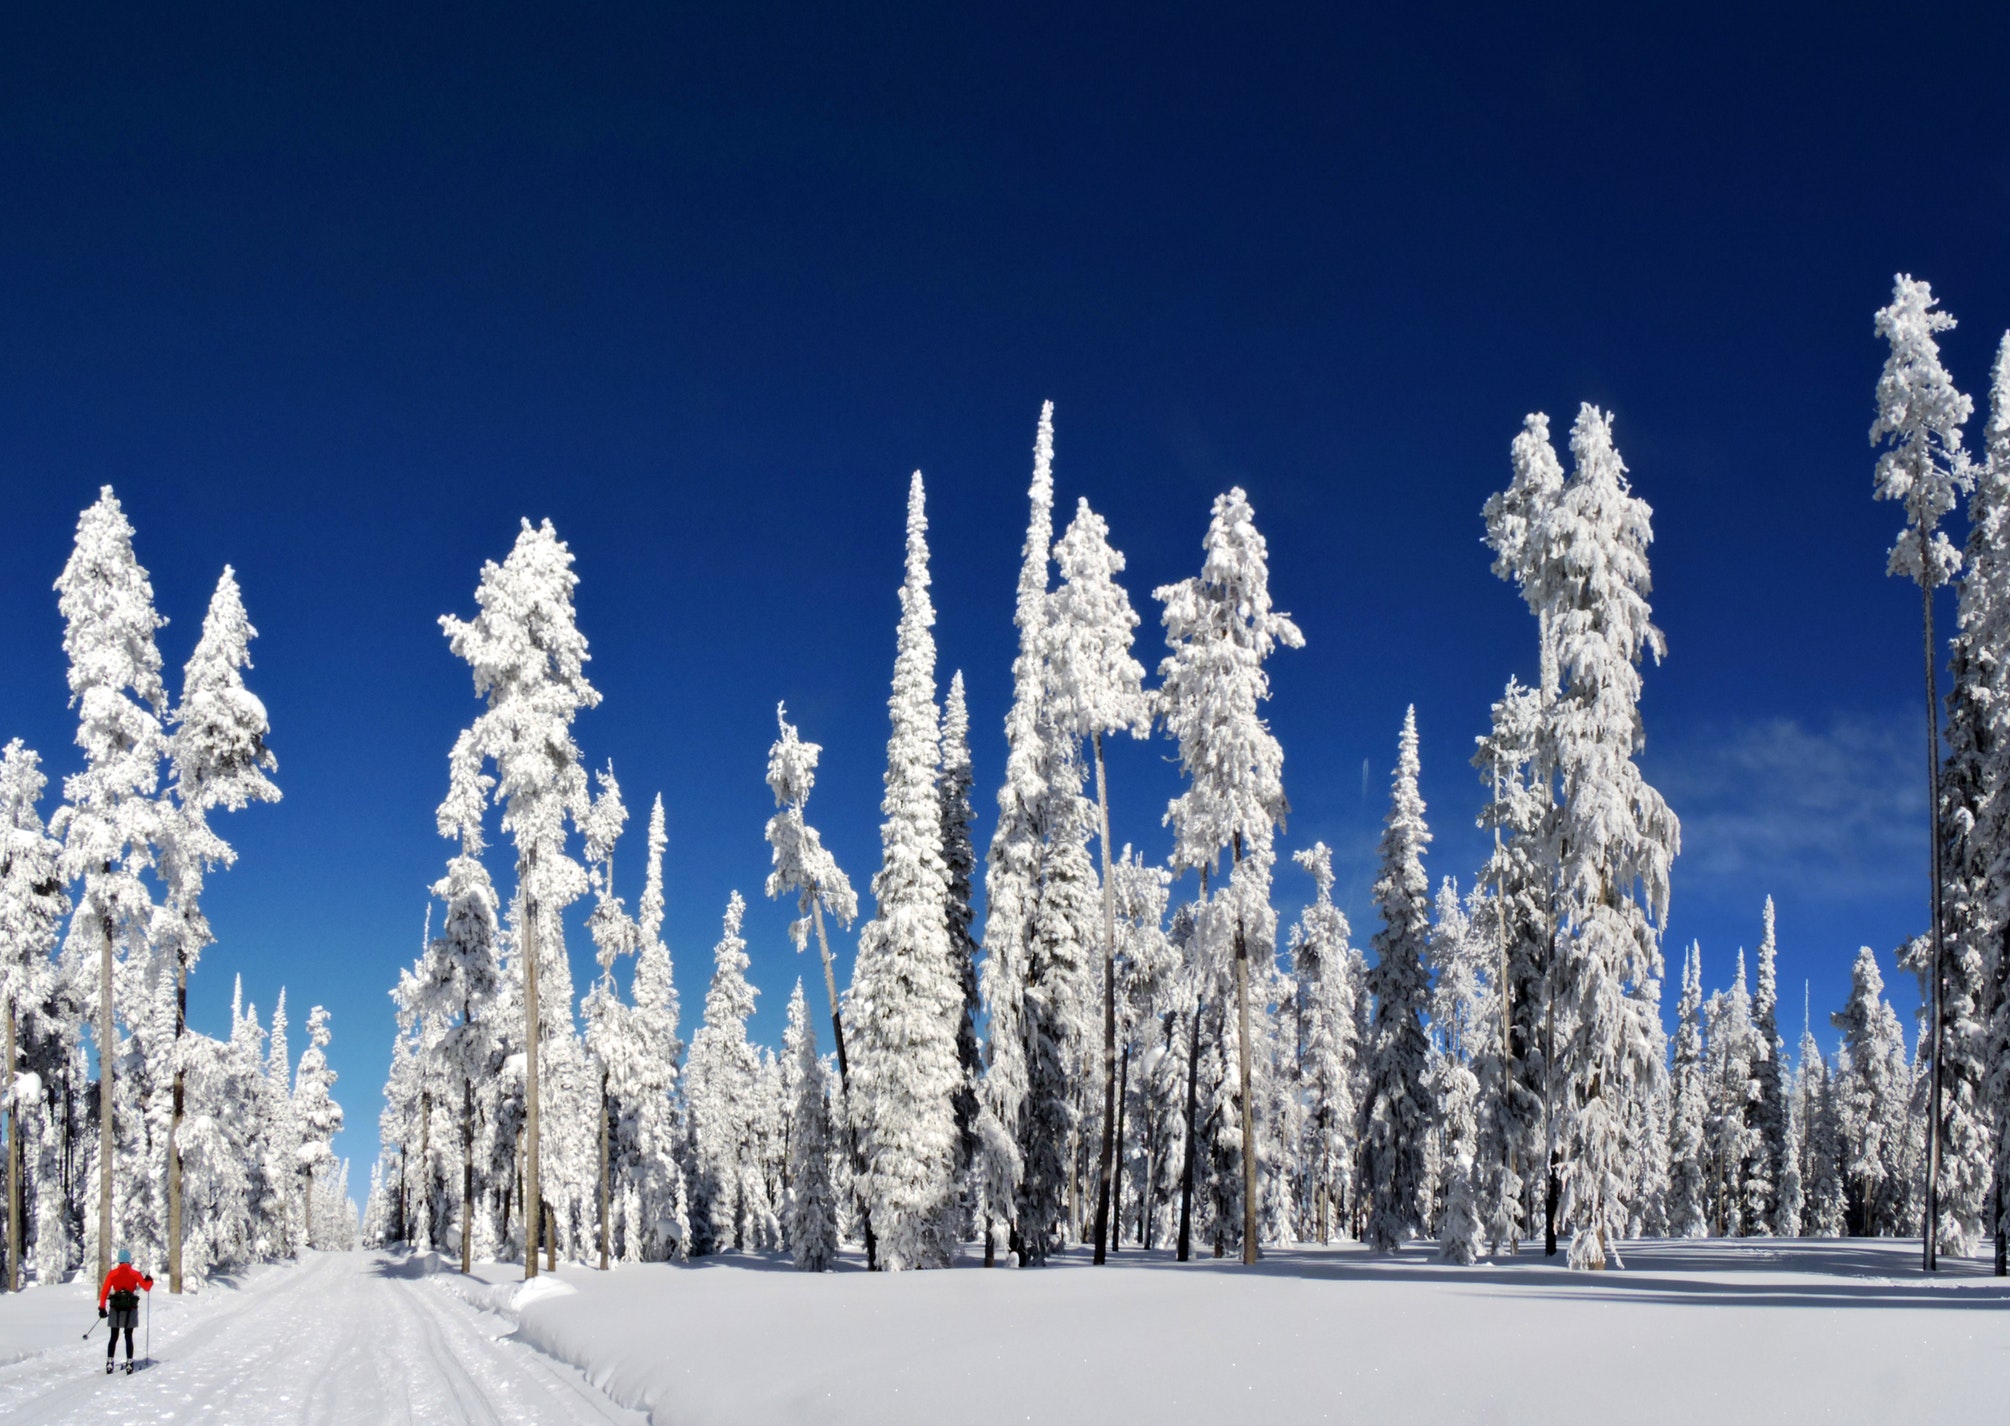 катание на беговых лыжах в заснеженном лесу